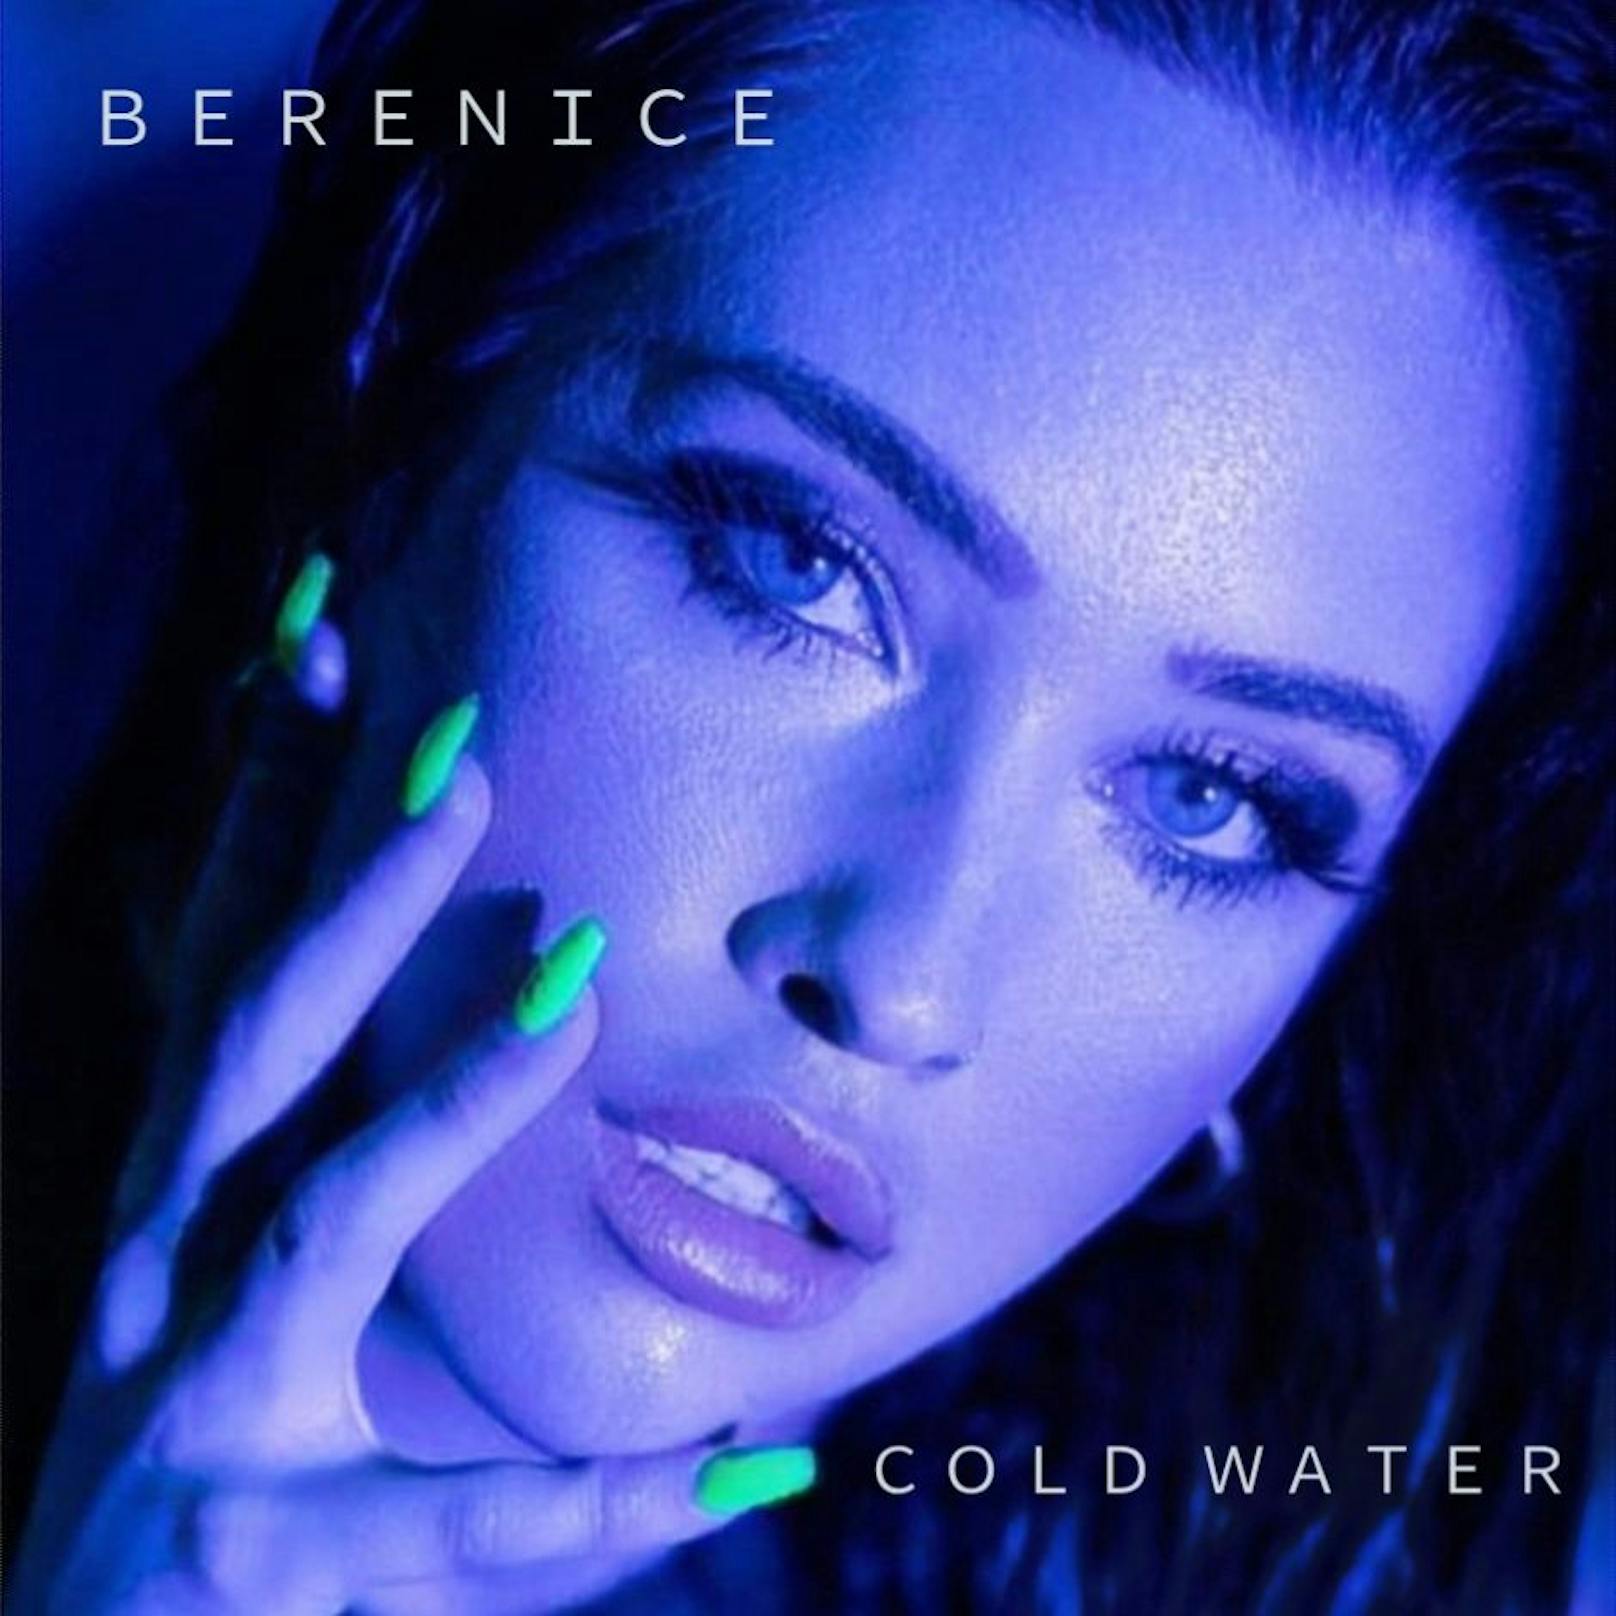 "Cold Water": Ihr neuer Song klingt nicht nur international, sondern ist auch ein absoluter Partysong! Die Mischung aus R‘n‘B, 80‘s, Disco und Pop lassen die stimmgewaltige Sängerin in neuem Glanz erstrahlen.